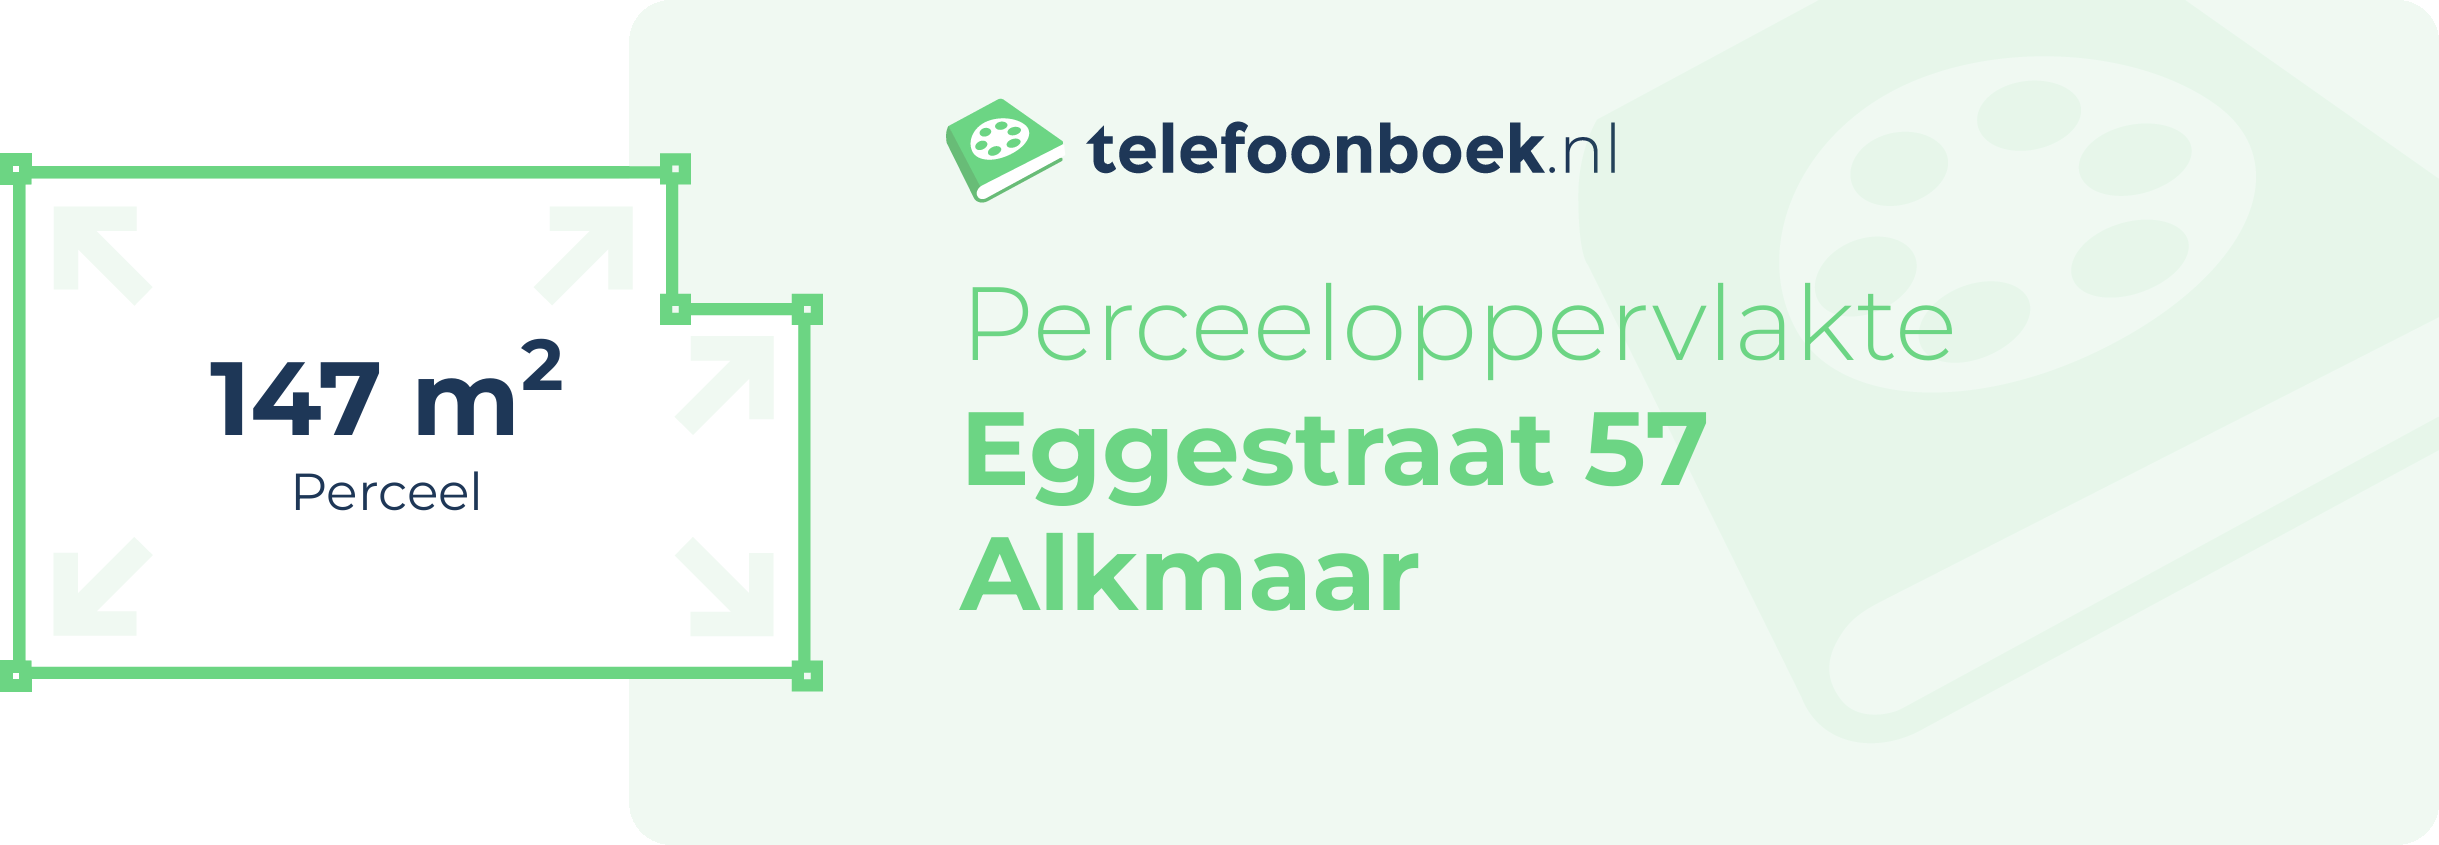 Perceeloppervlakte Eggestraat 57 Alkmaar